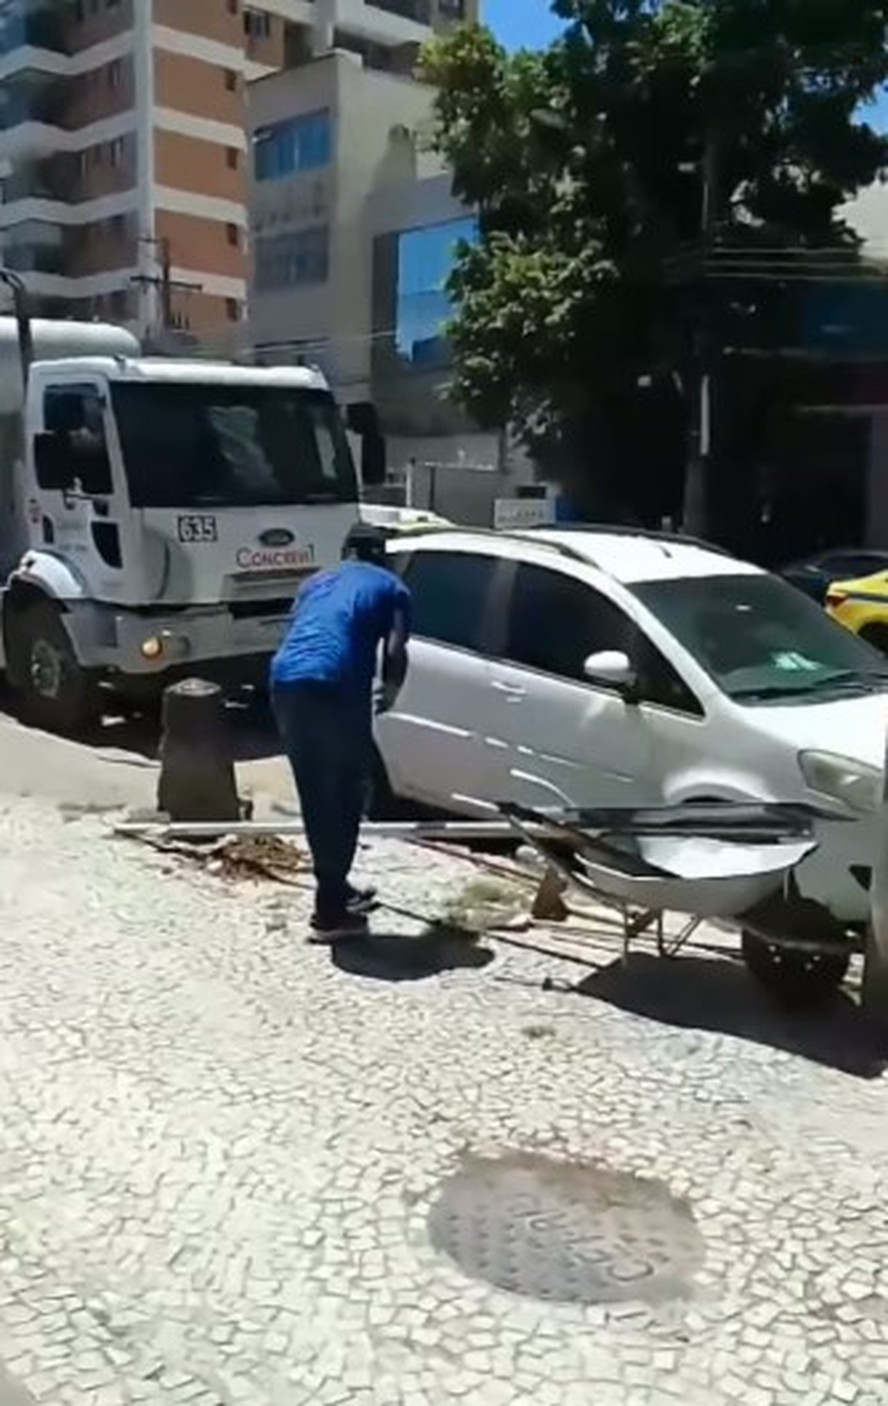 Para caminhão de empresa privada estacionar, homem tira placa de